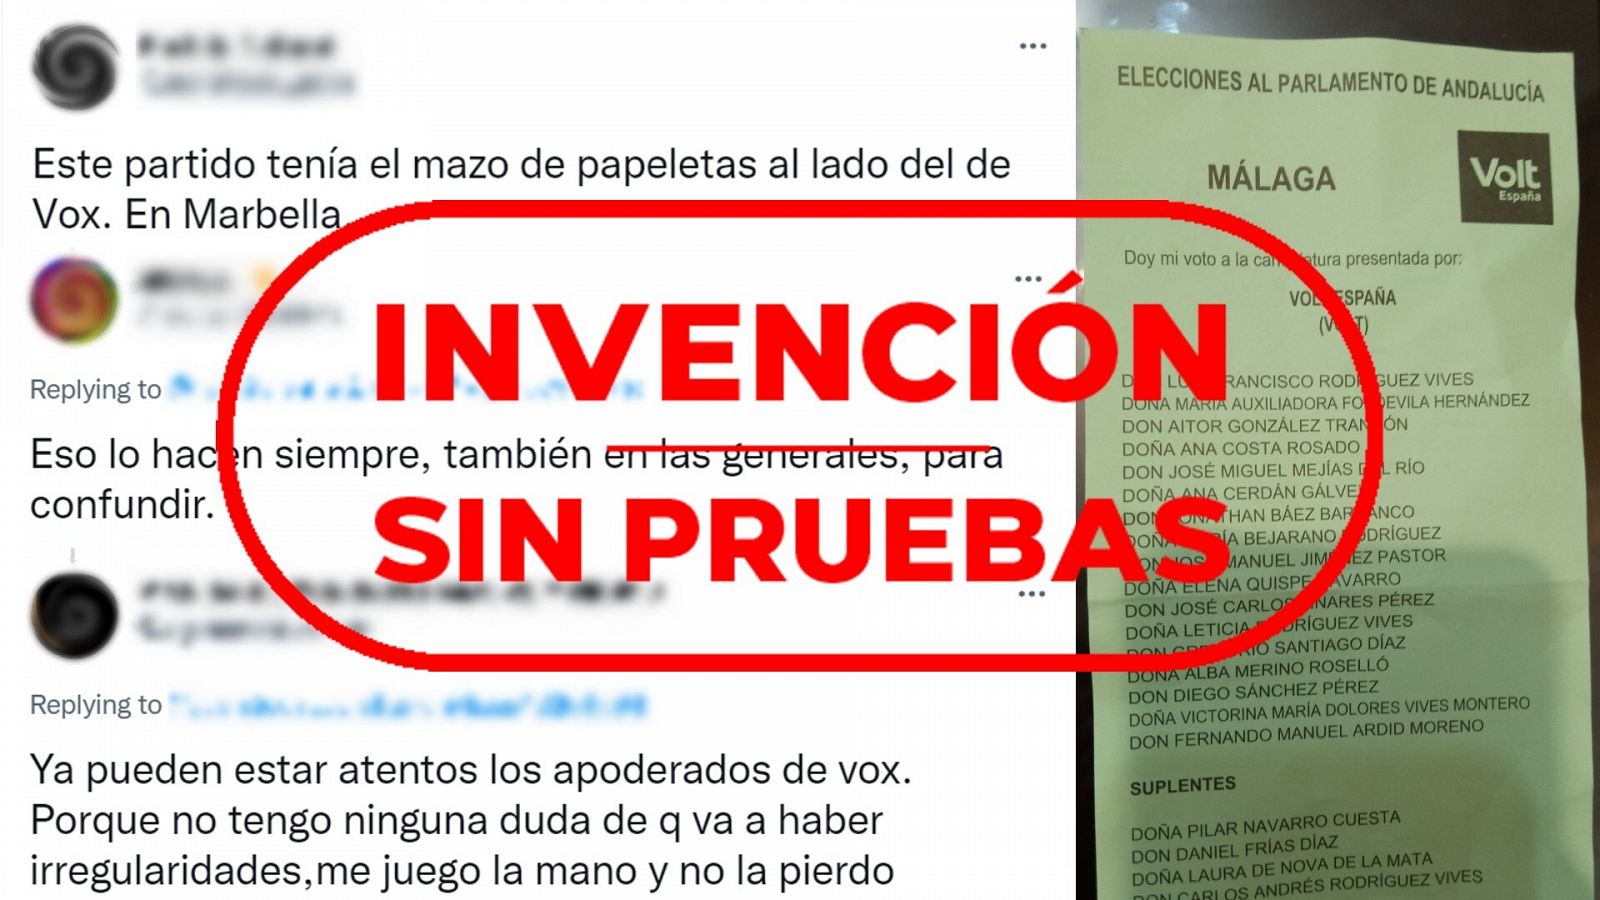 Mensajes que dicen que las papeletas de VOX y Volt han aparecido juntas en Marbella e imagen de una papeleta de Volt con el sello invención sin pruebas